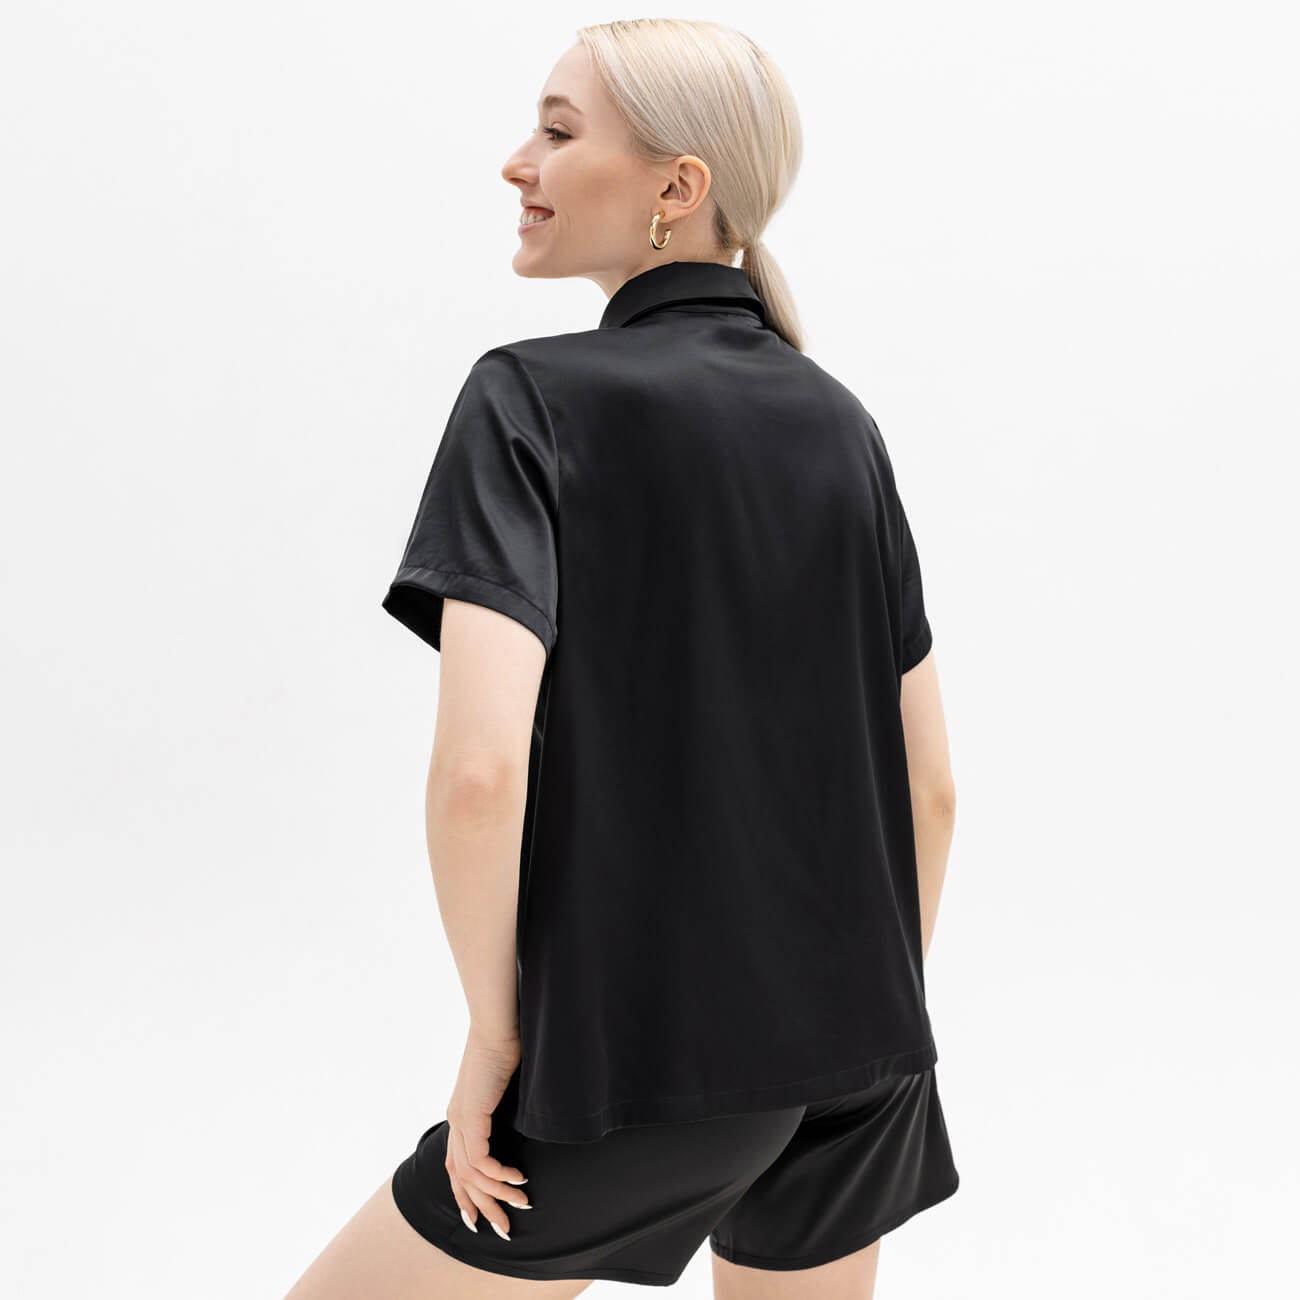 Рубашка женская, р. M, с коротким рукавом, полиэстер/эластан, черная, Madeline винтаж оверсайз женская женская футболка с коротким рукавом хип хоп уличная одежда топы y2k модная одежда